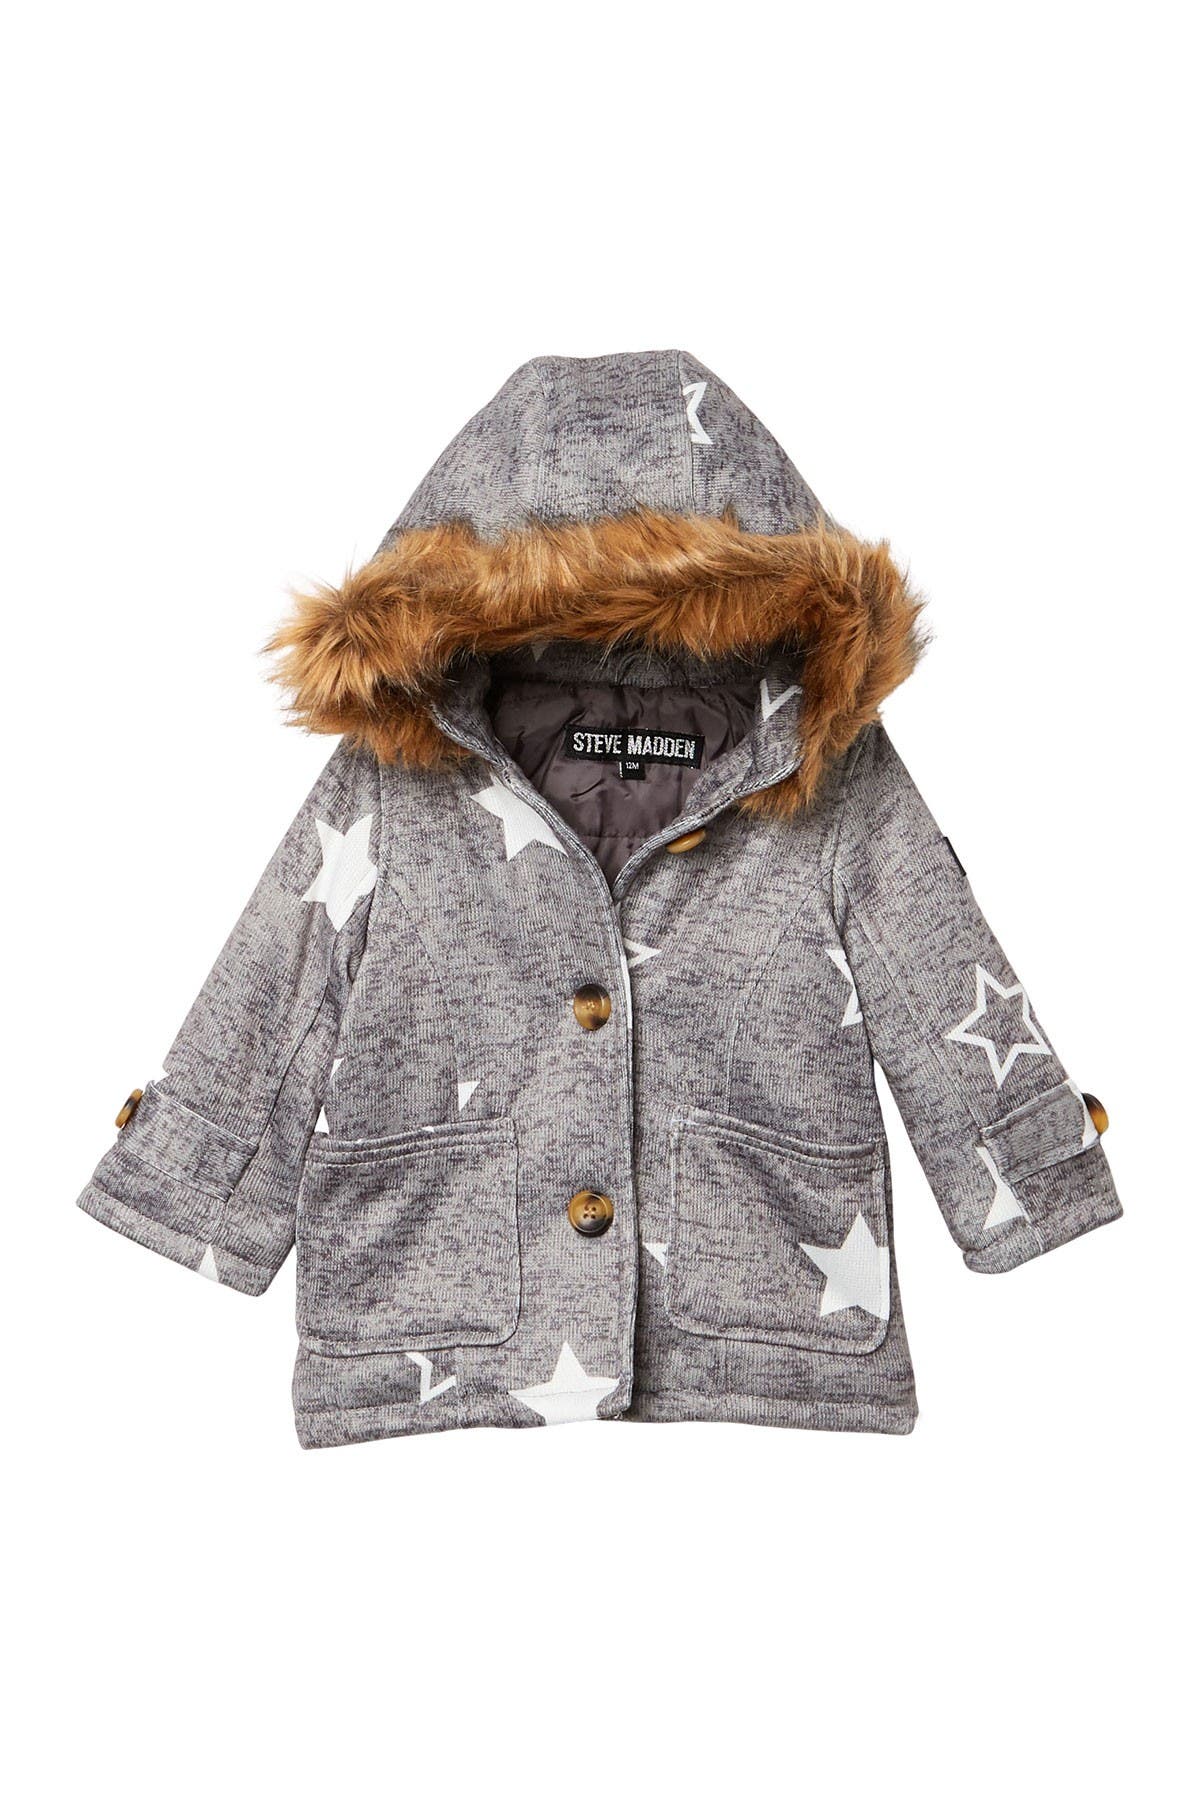 Kids' Coats \u0026 Jackets | Nordstrom Rack